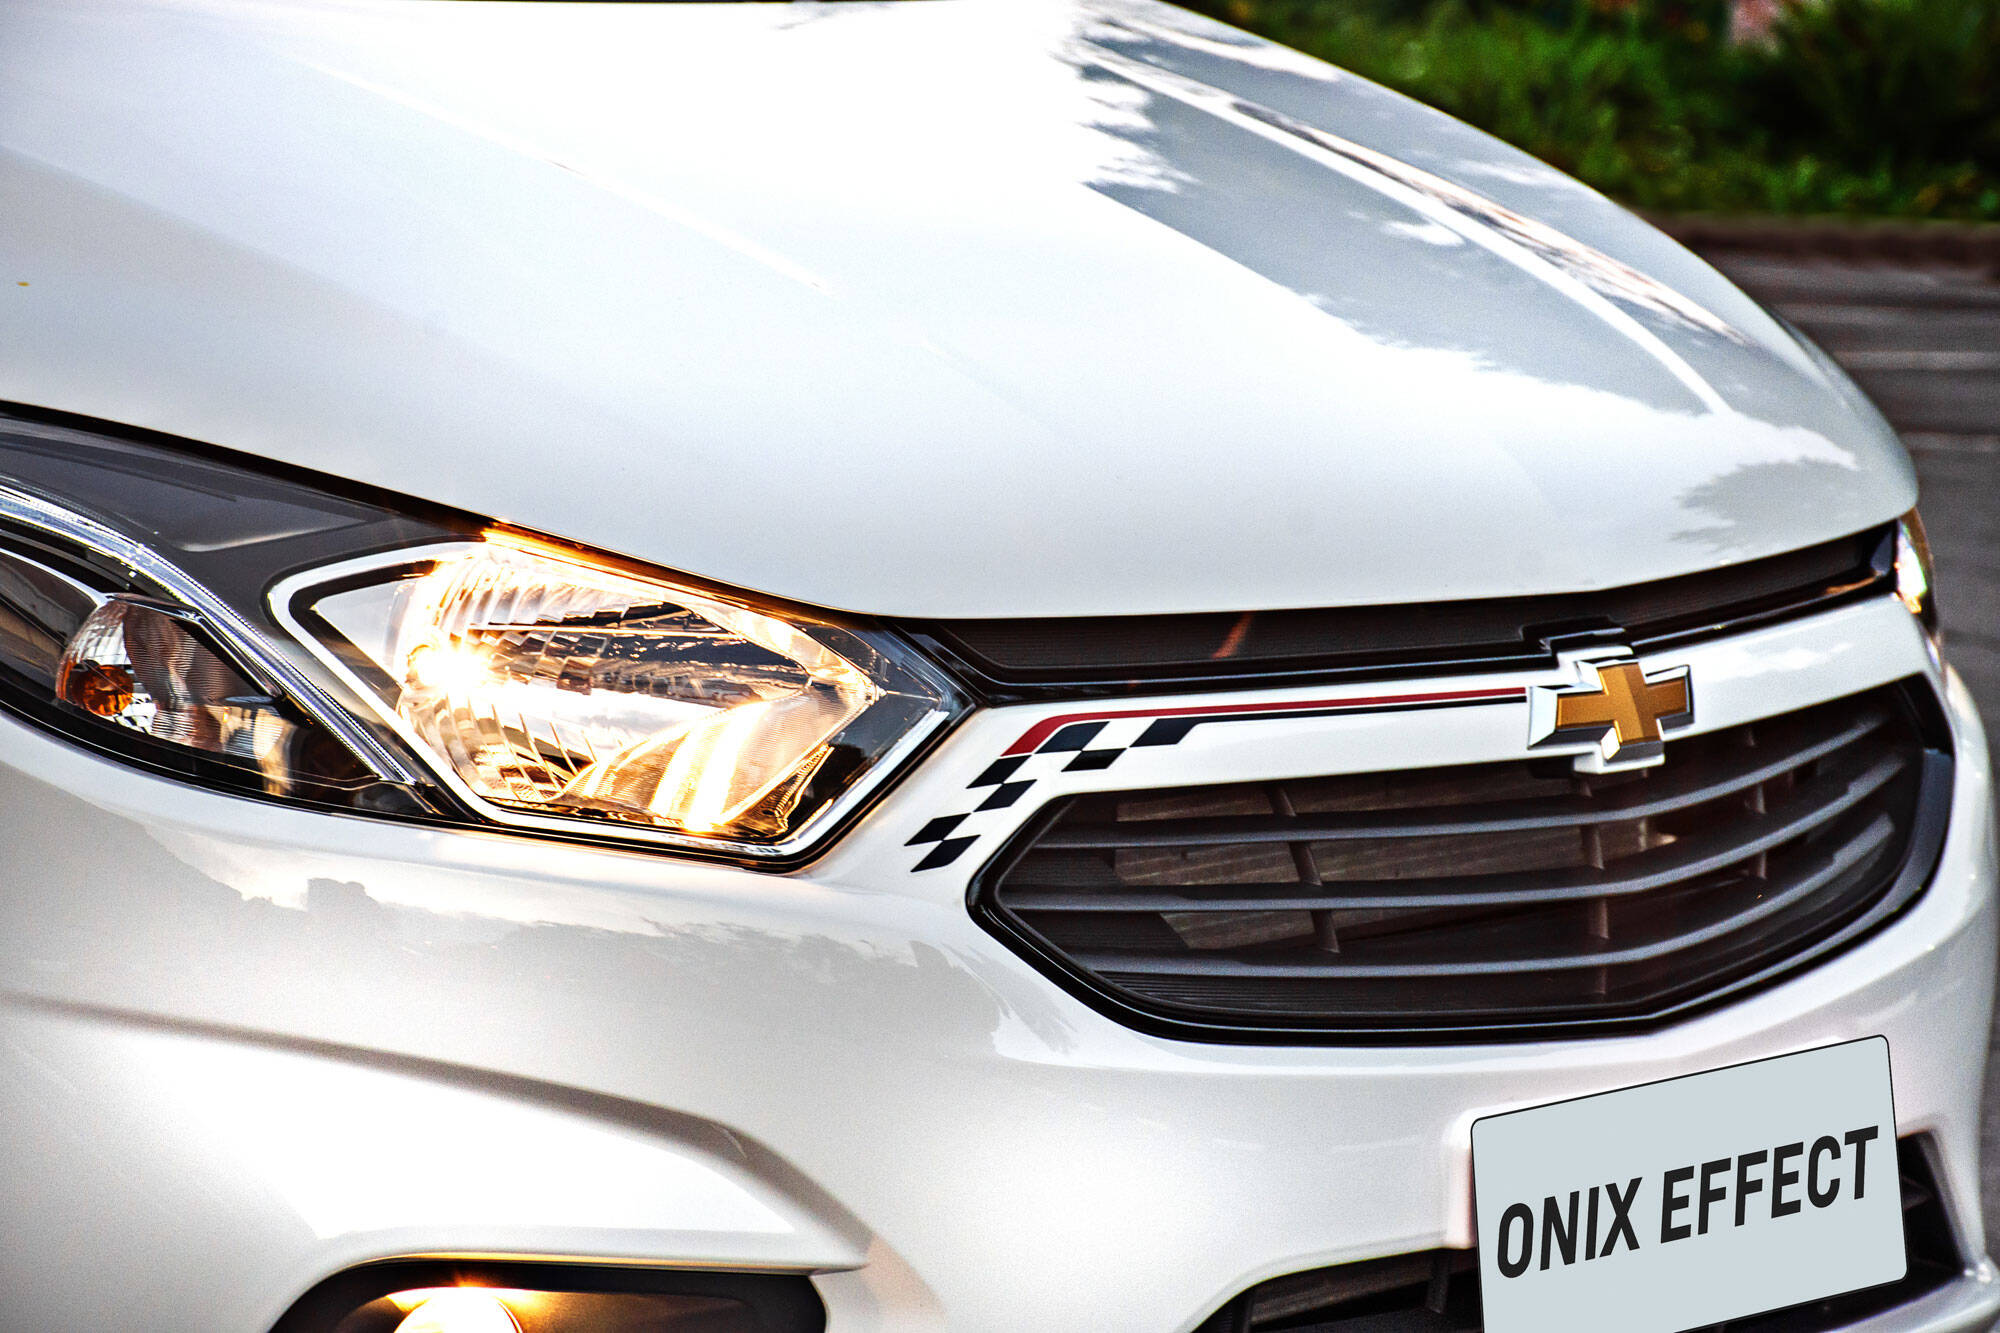 Chevrolet Onix Effect. Foto: Divulgação/General Motors